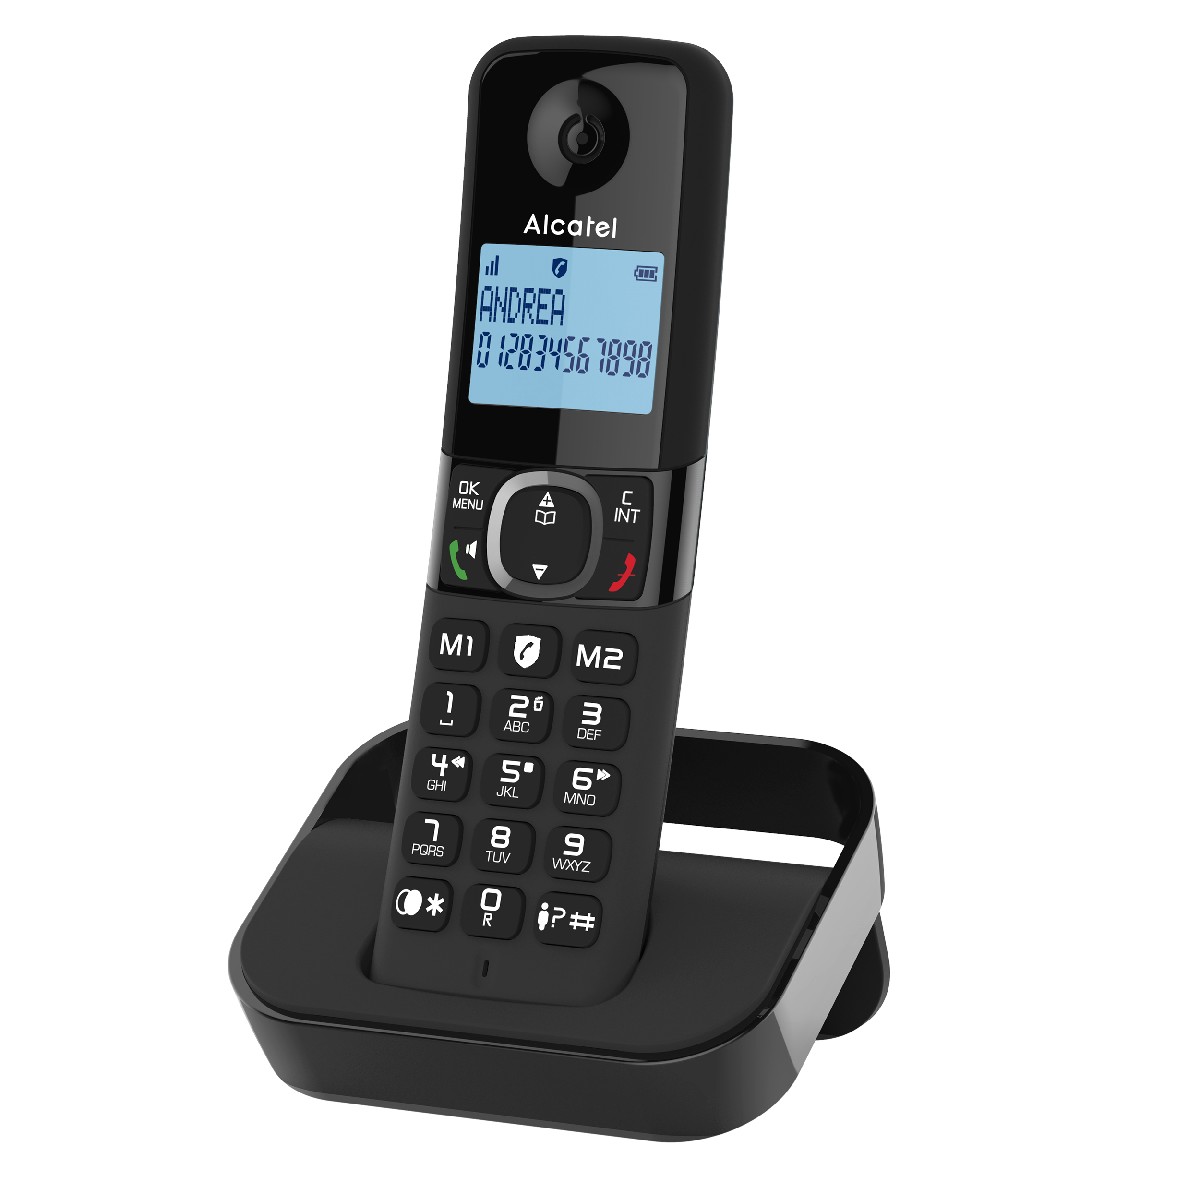 Ασύρματο Ψηφιακό Τηλέφωνο Alcatel F860  με Ανοιχτή Ακρόαση και Δυνατότητα Αποκλεισμού Κλήσεων  Μαύρο